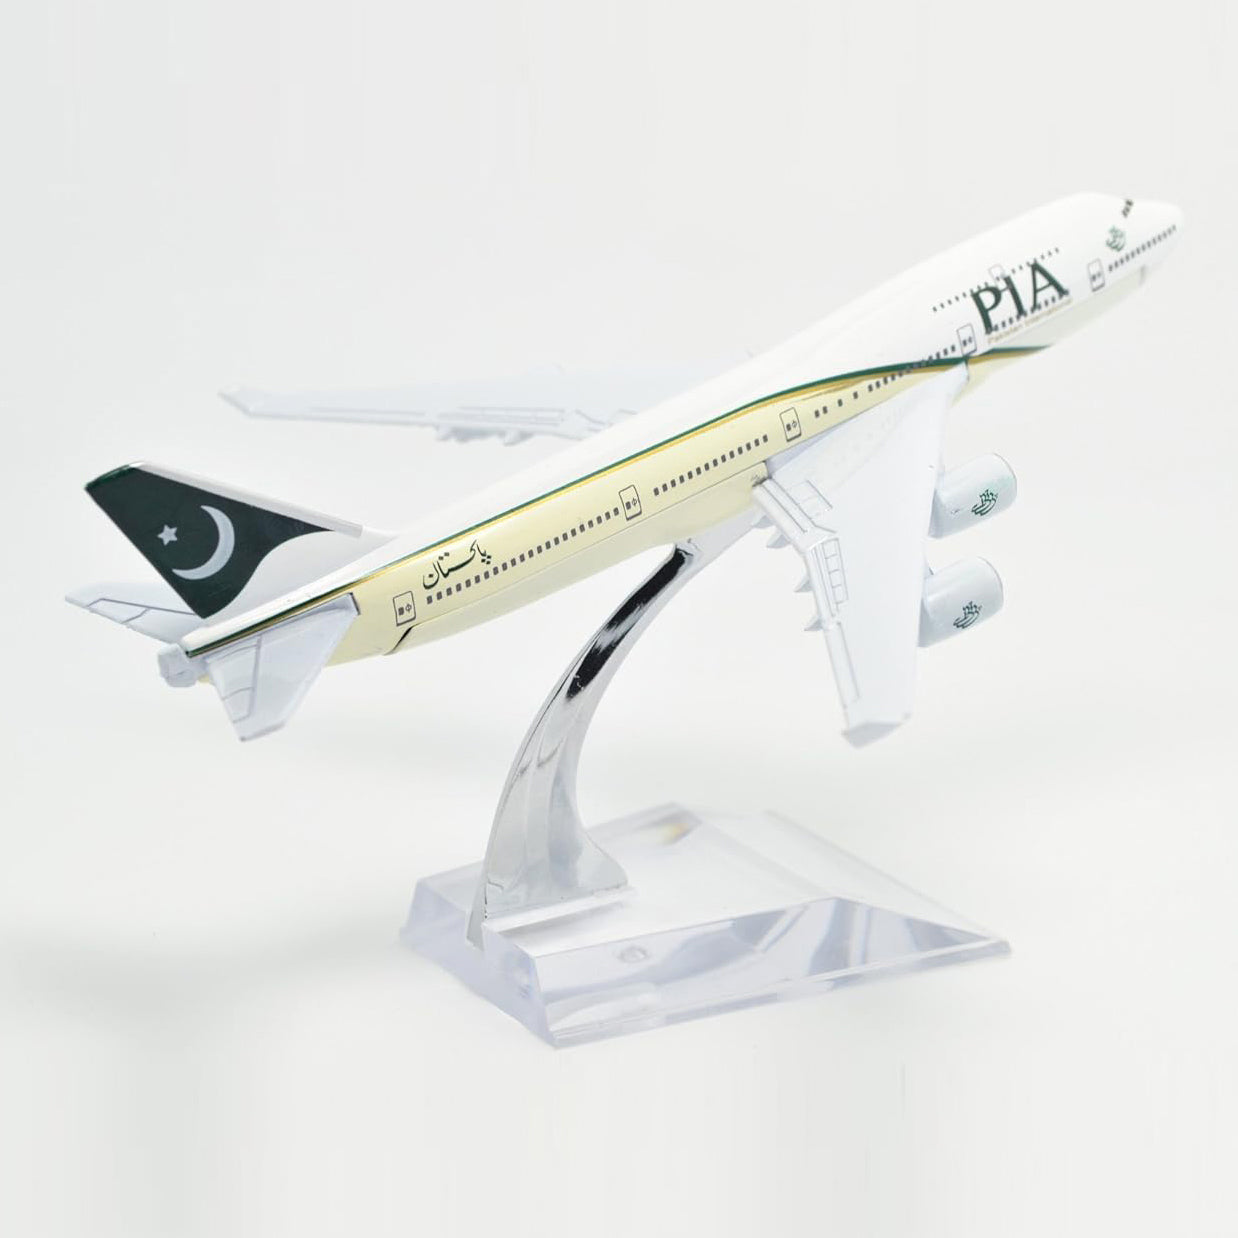 16 cm Boeing B747-400 PIA Metal Airplane Model Plane Toy Plane Model